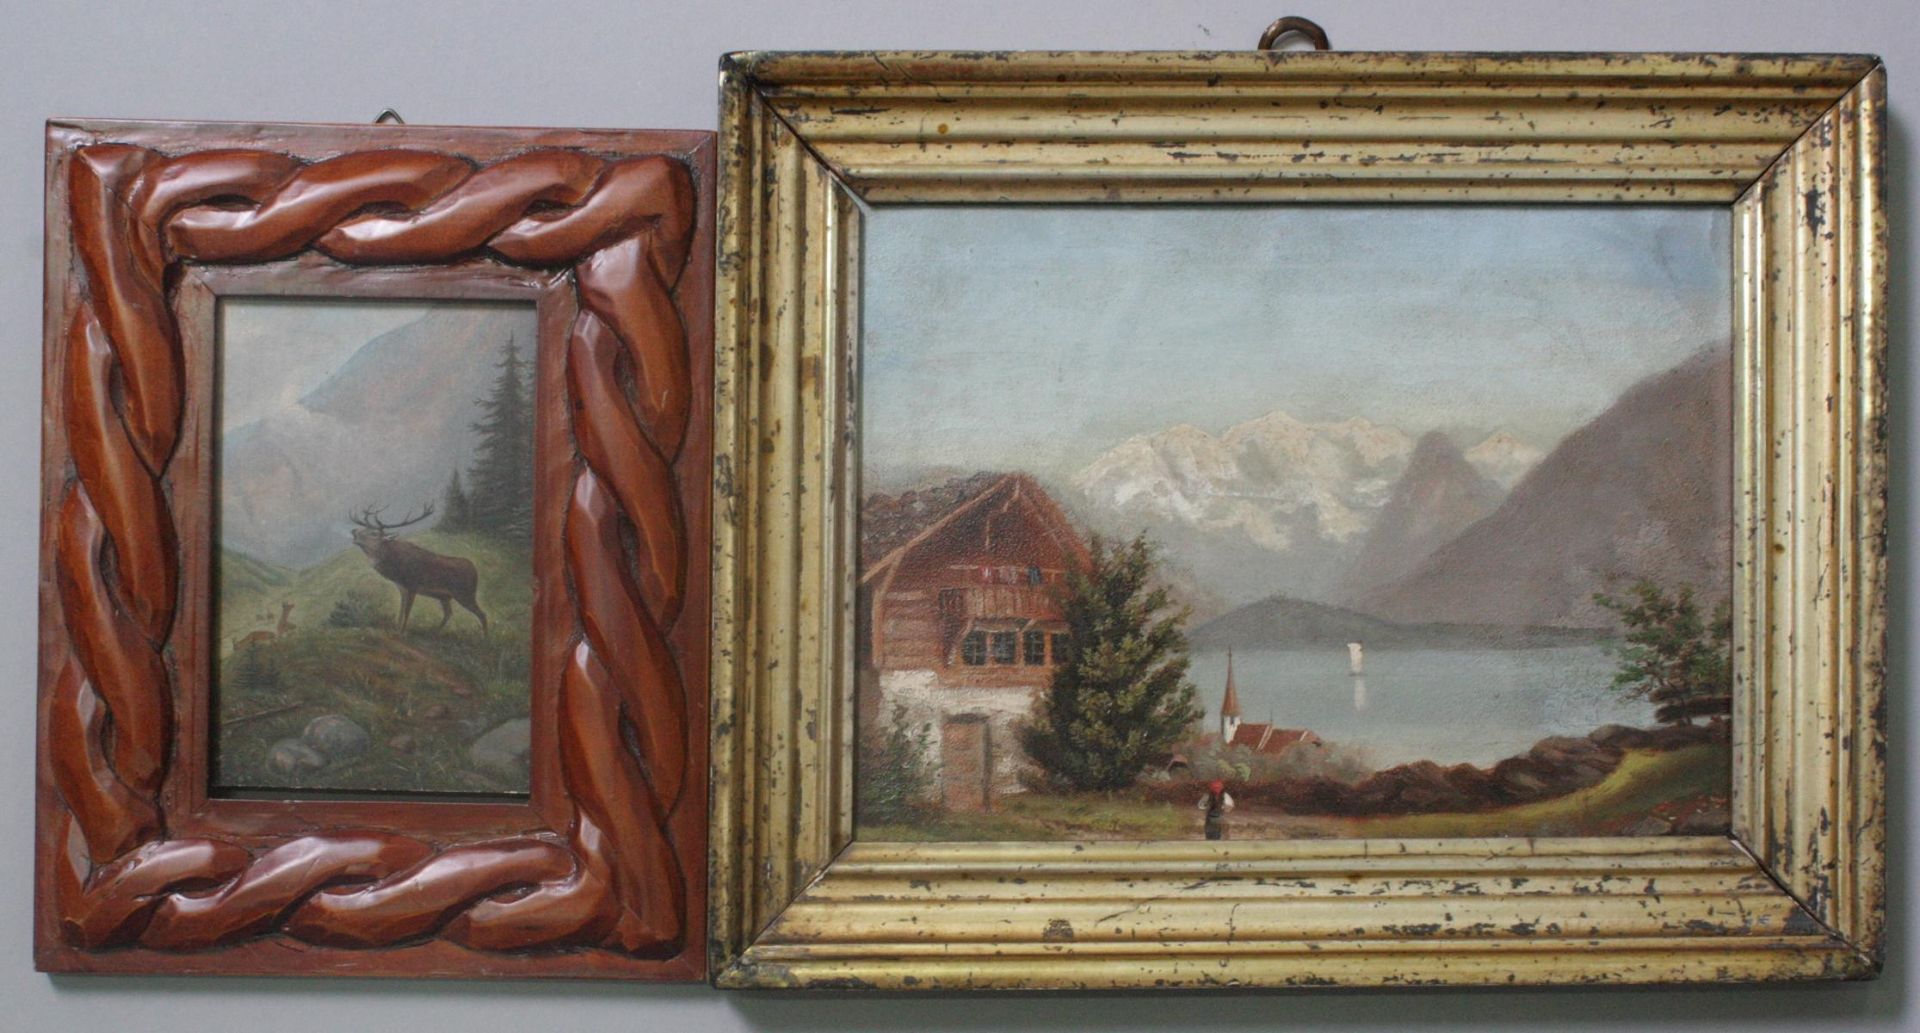 2 Anonyme Gemälde, Landschafts- und Tier Darstellung um 1900